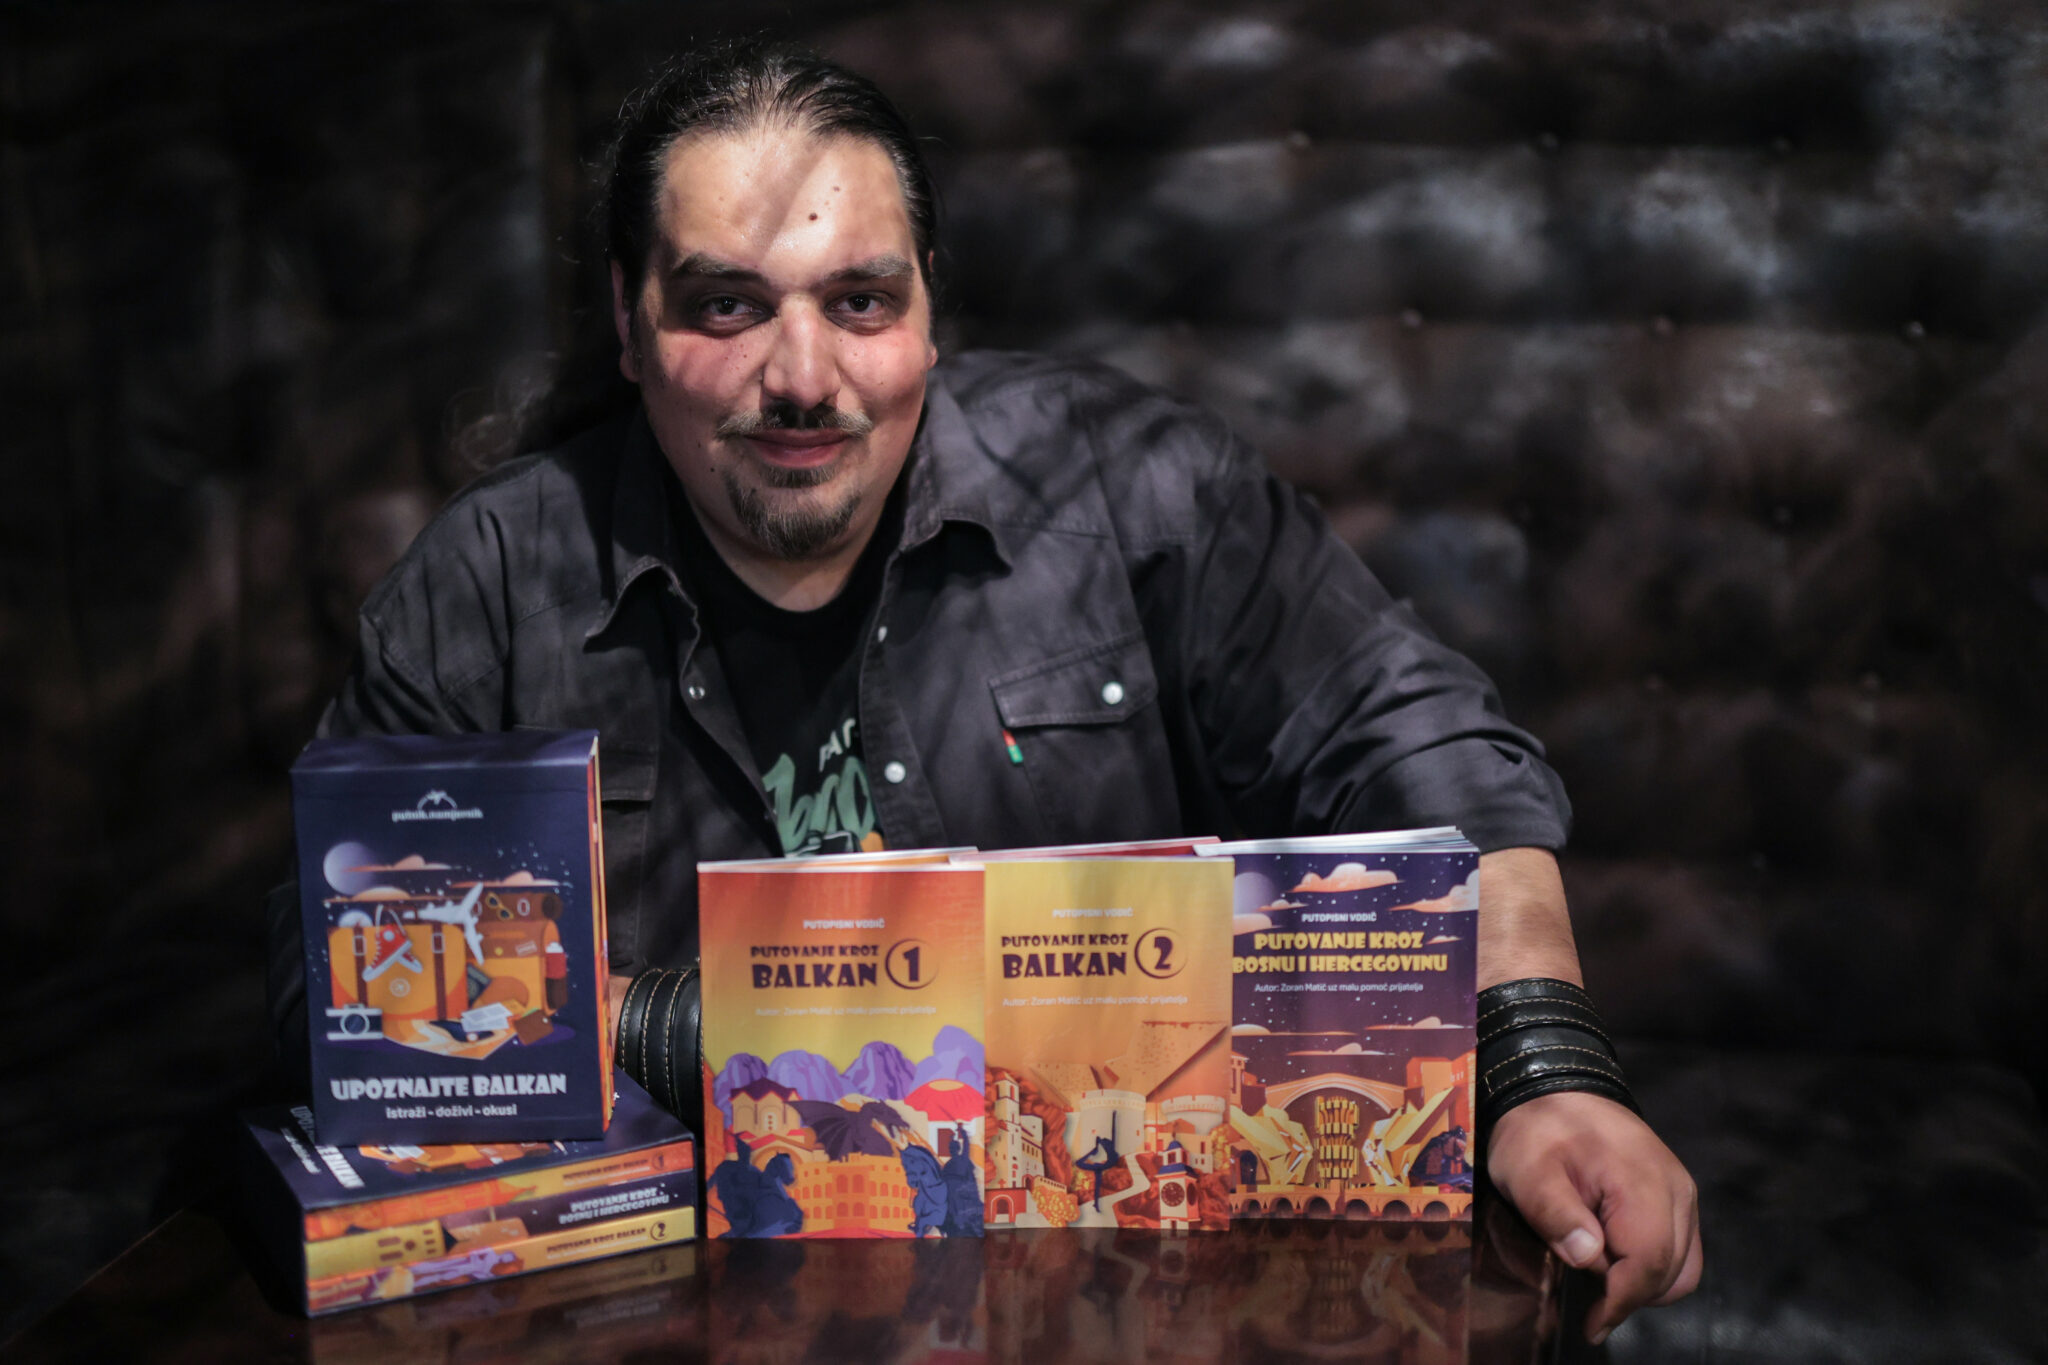 PROMOCIJA U NPRS Banjalučki putopisac Zoran Matić predstavlja dvije nove knjige (FOTO)